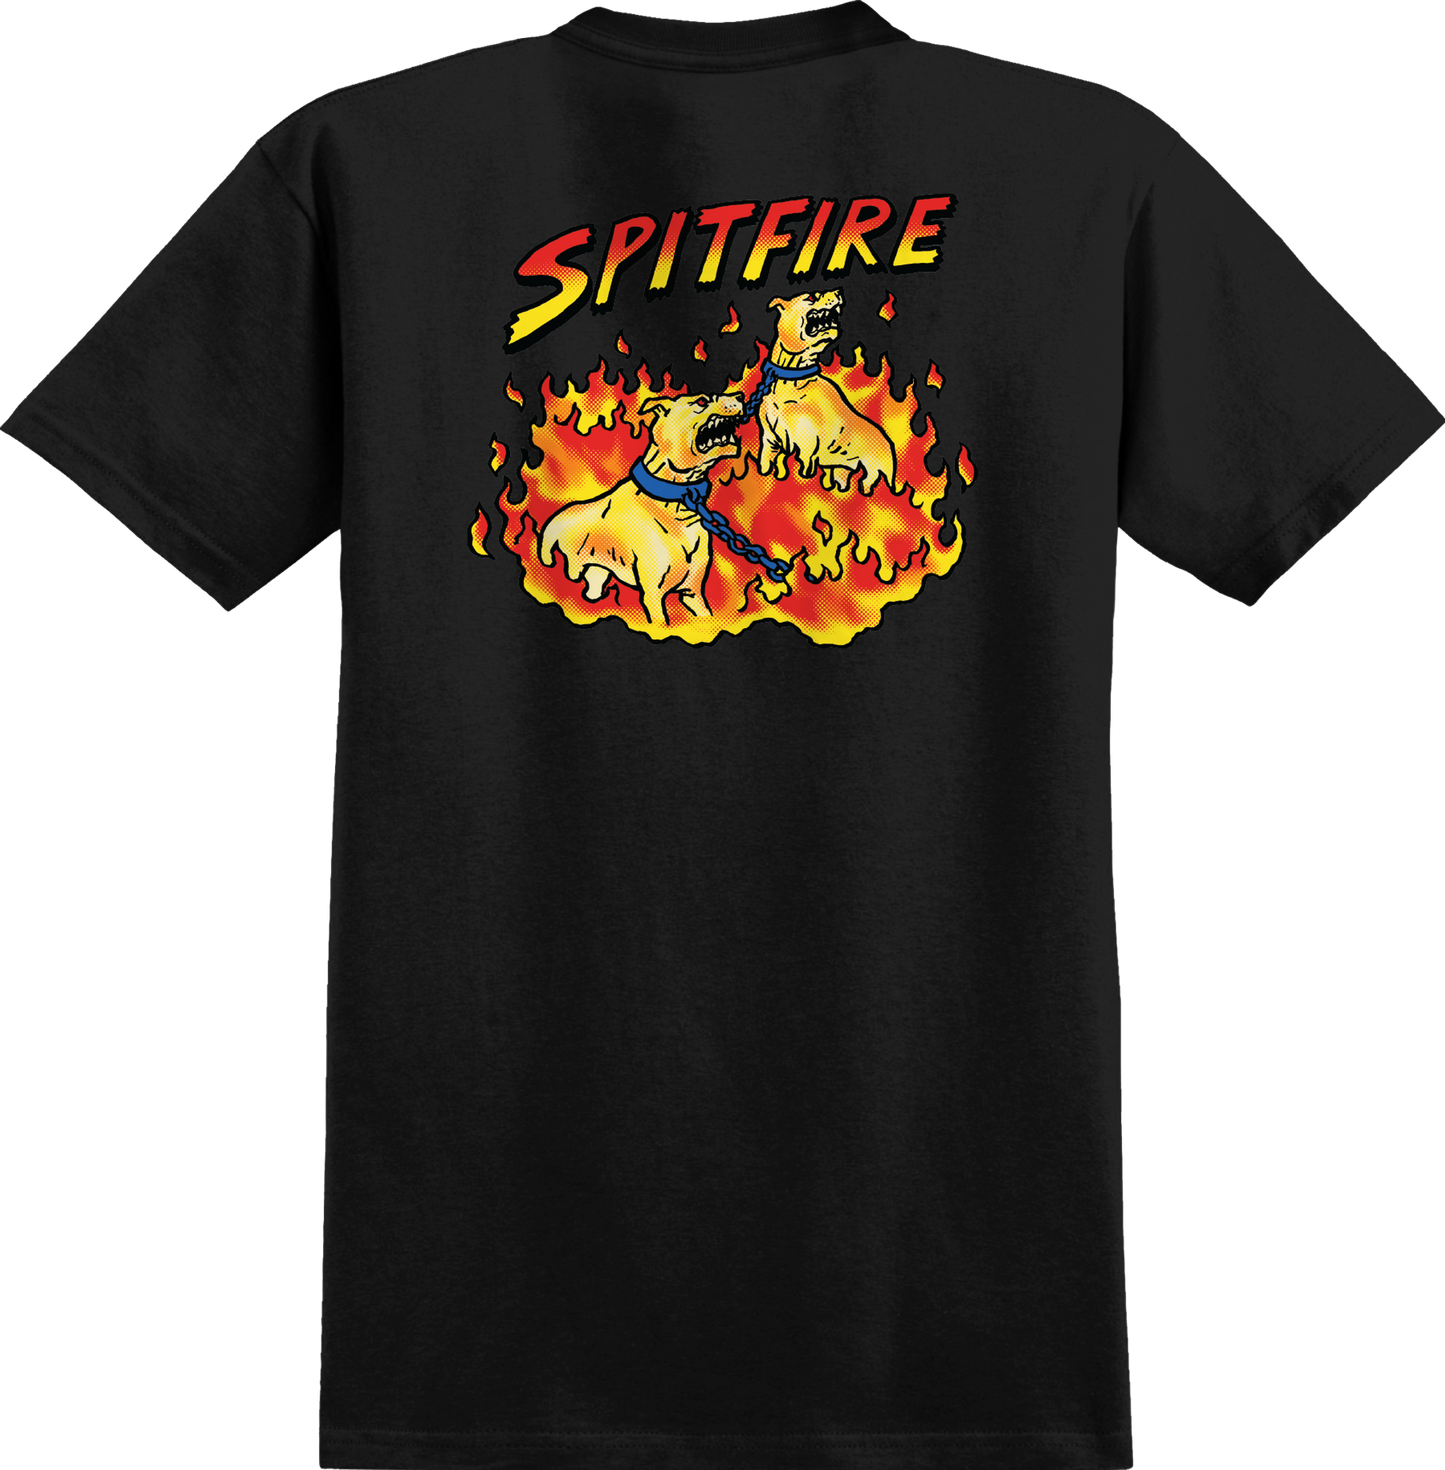 Spitfire Hell Hounds II T-Shirt Black